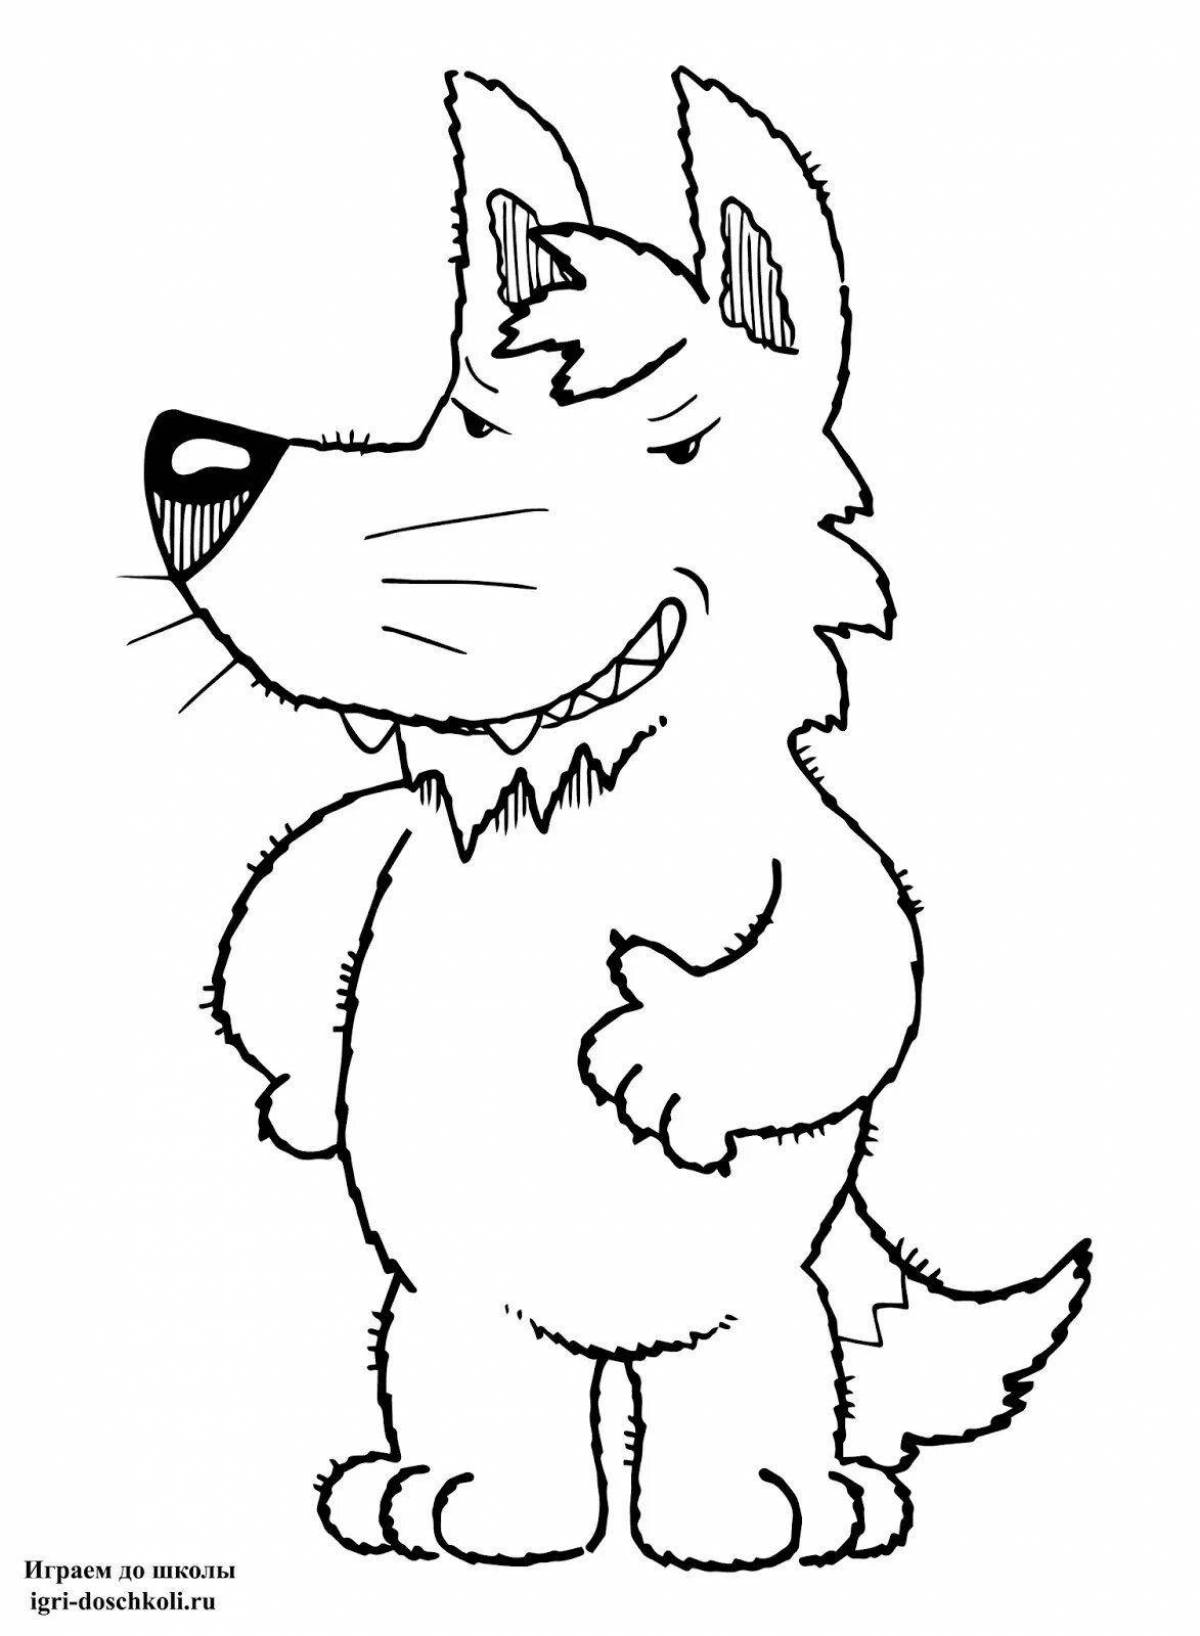 Fun coloring wolf cartoon